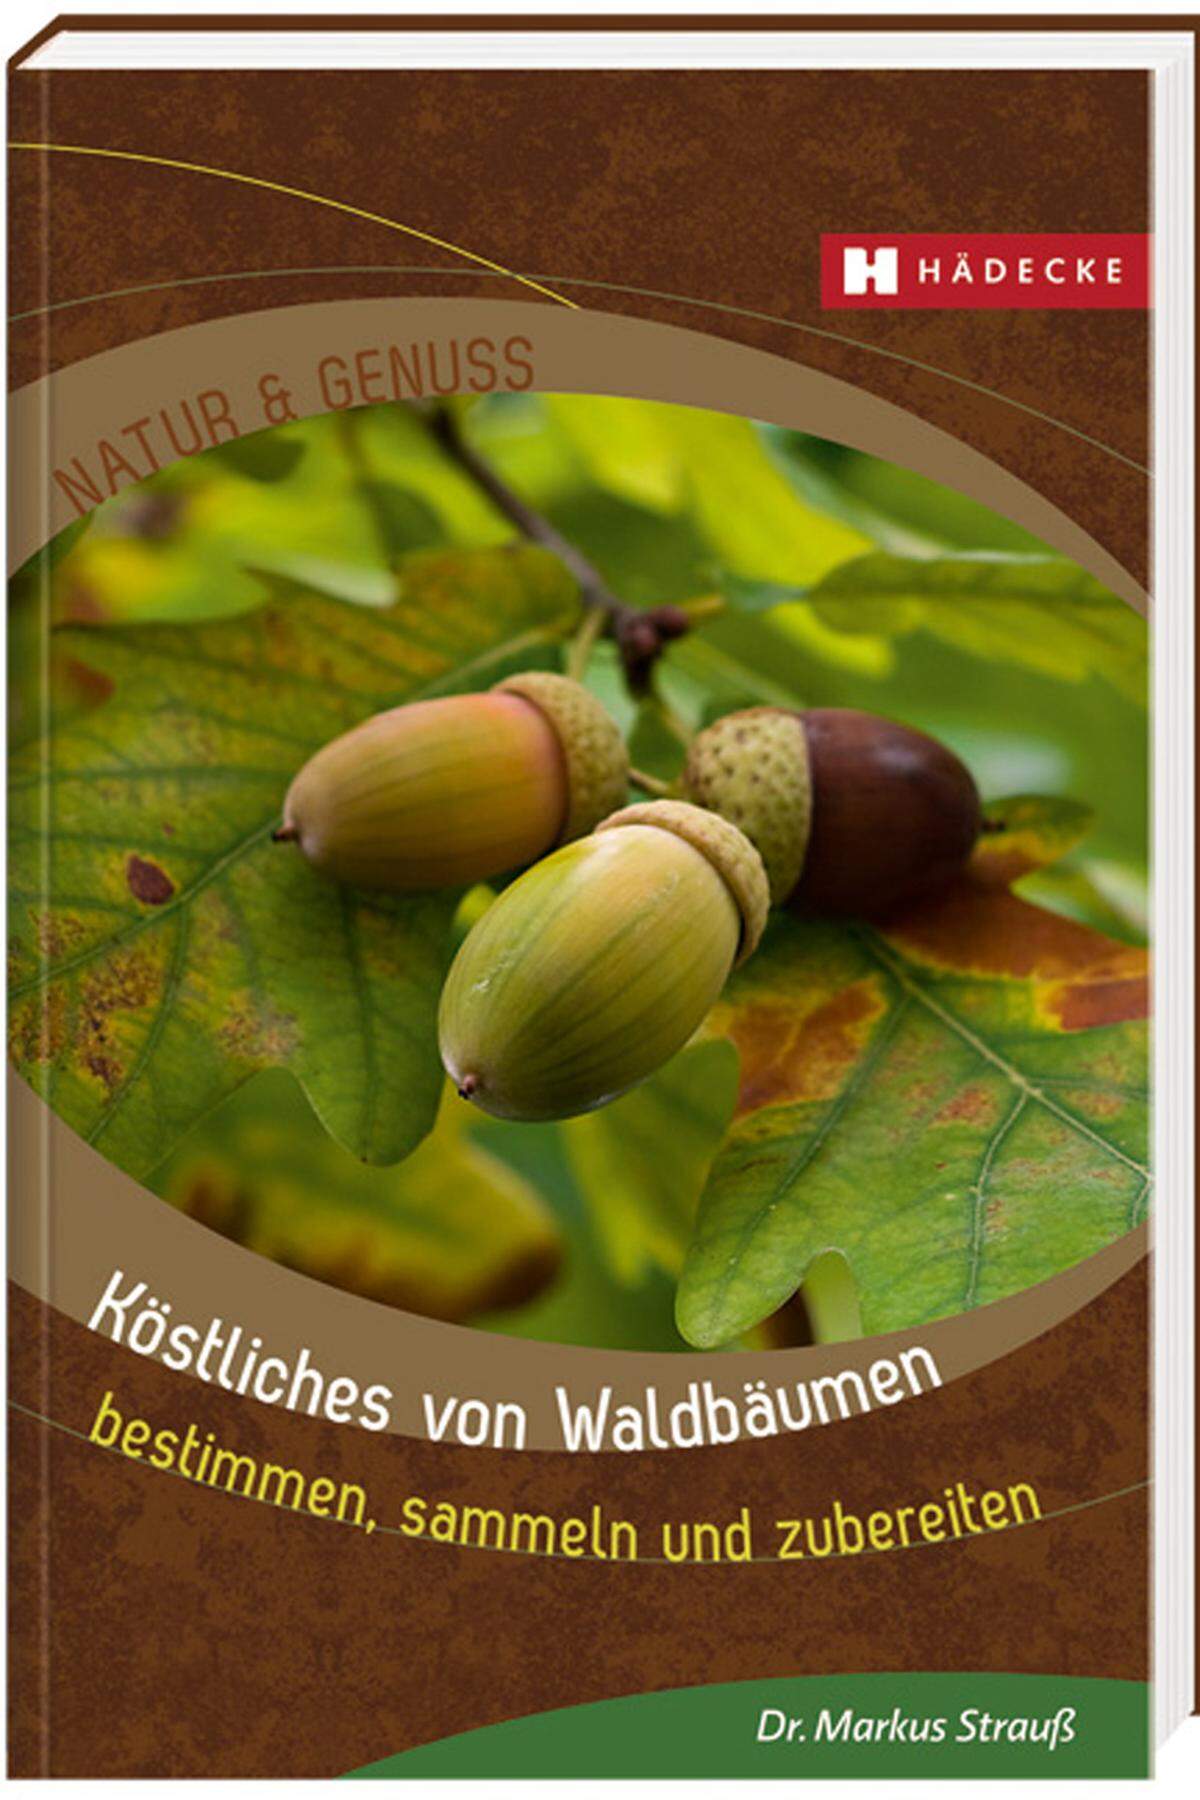 Diese und andere Rezepte findet man in Markus Strauß' "Köstliches von Waldbäumen - bestimmen, sammeln und zubereiten" (Hädecke Verlag).